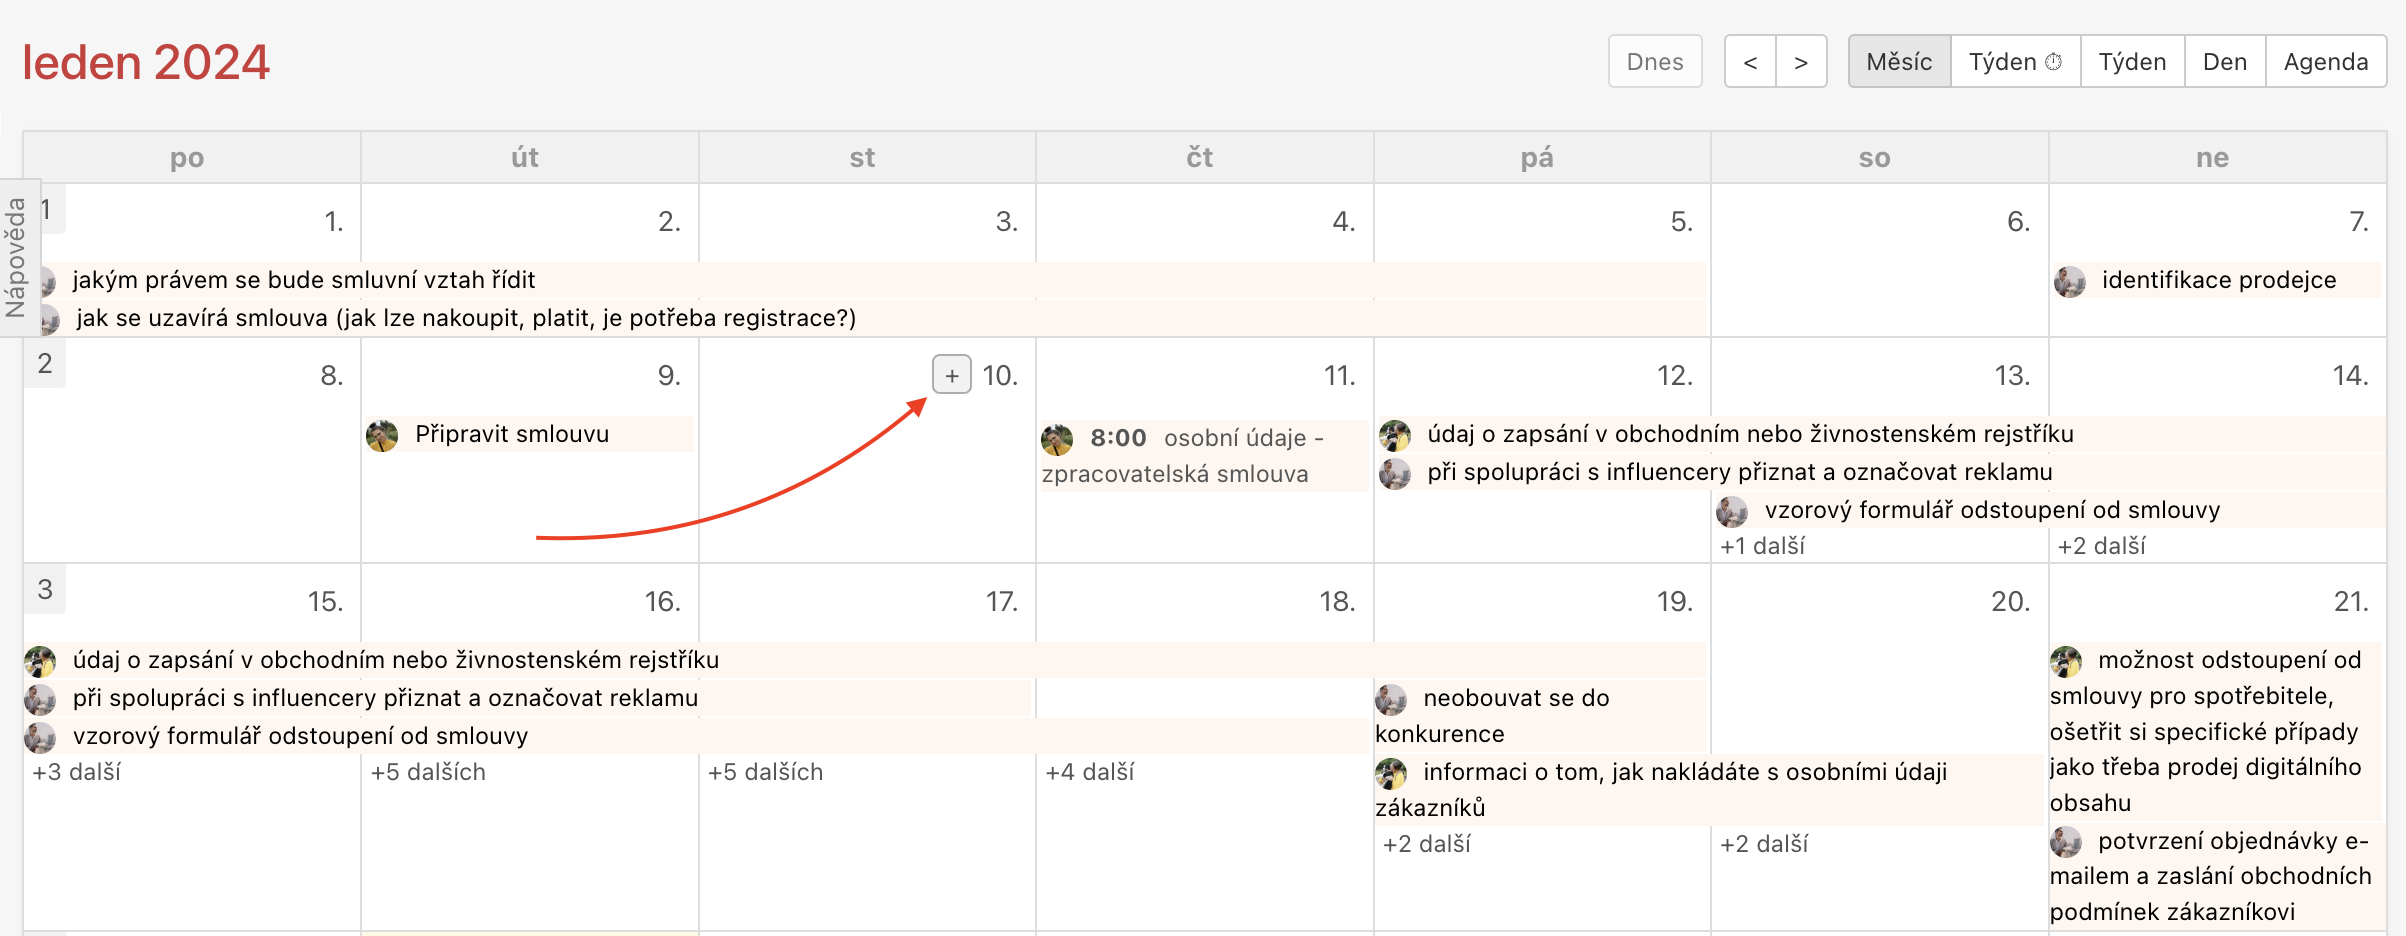 Ukázka jak přidat nový úkol v Kalendáři přes tlačítko + v měsíčním pohledu.